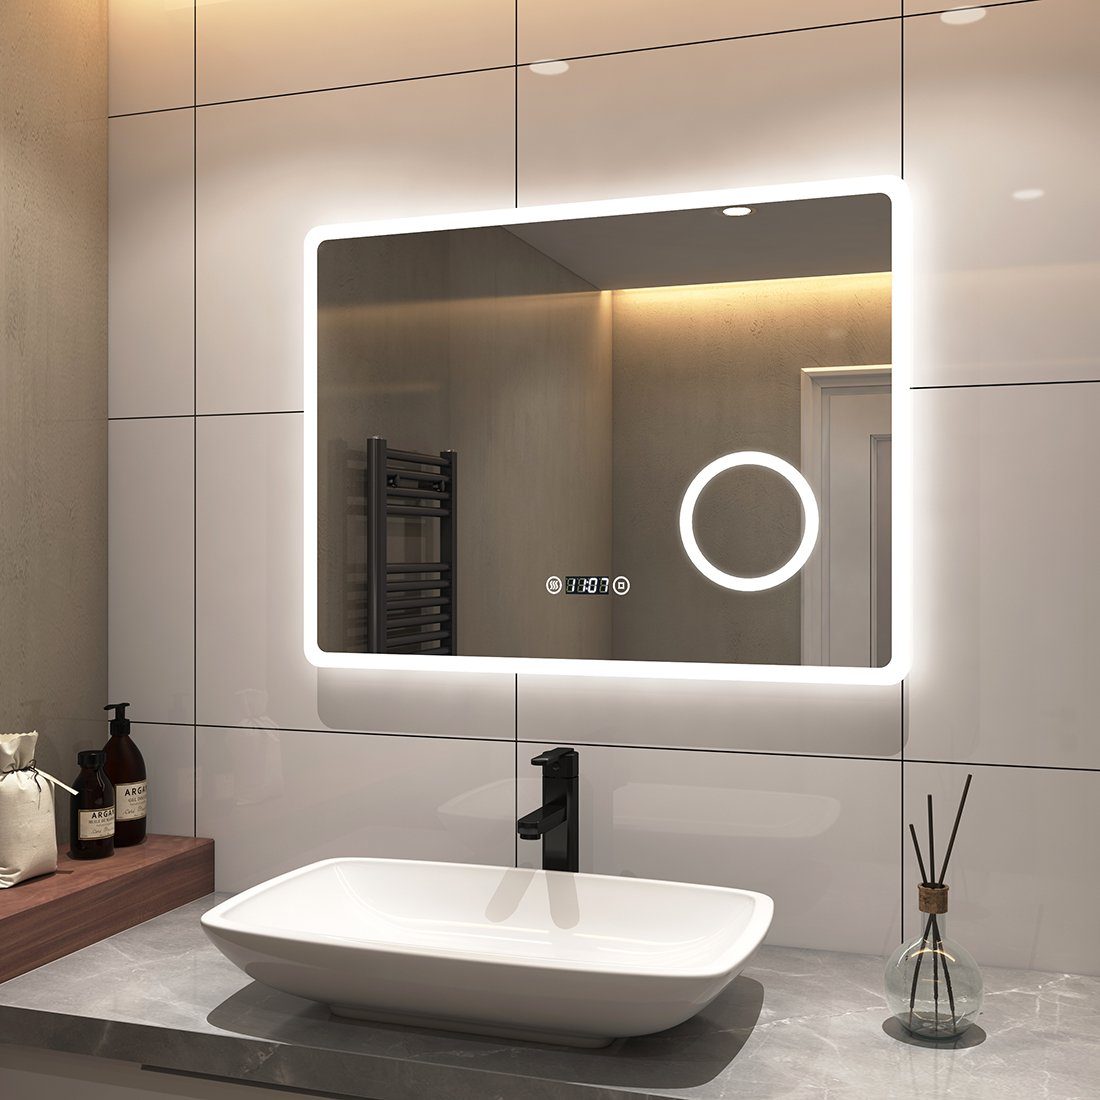 S'AFIELINA Badspiegel Badspiegel mit Beleuchtung Wandspiegel Rasierspiegel Energiesparend, Touchschalter,Uhr,Beschlagfrei,3-fach Vergrößerung,IP 54